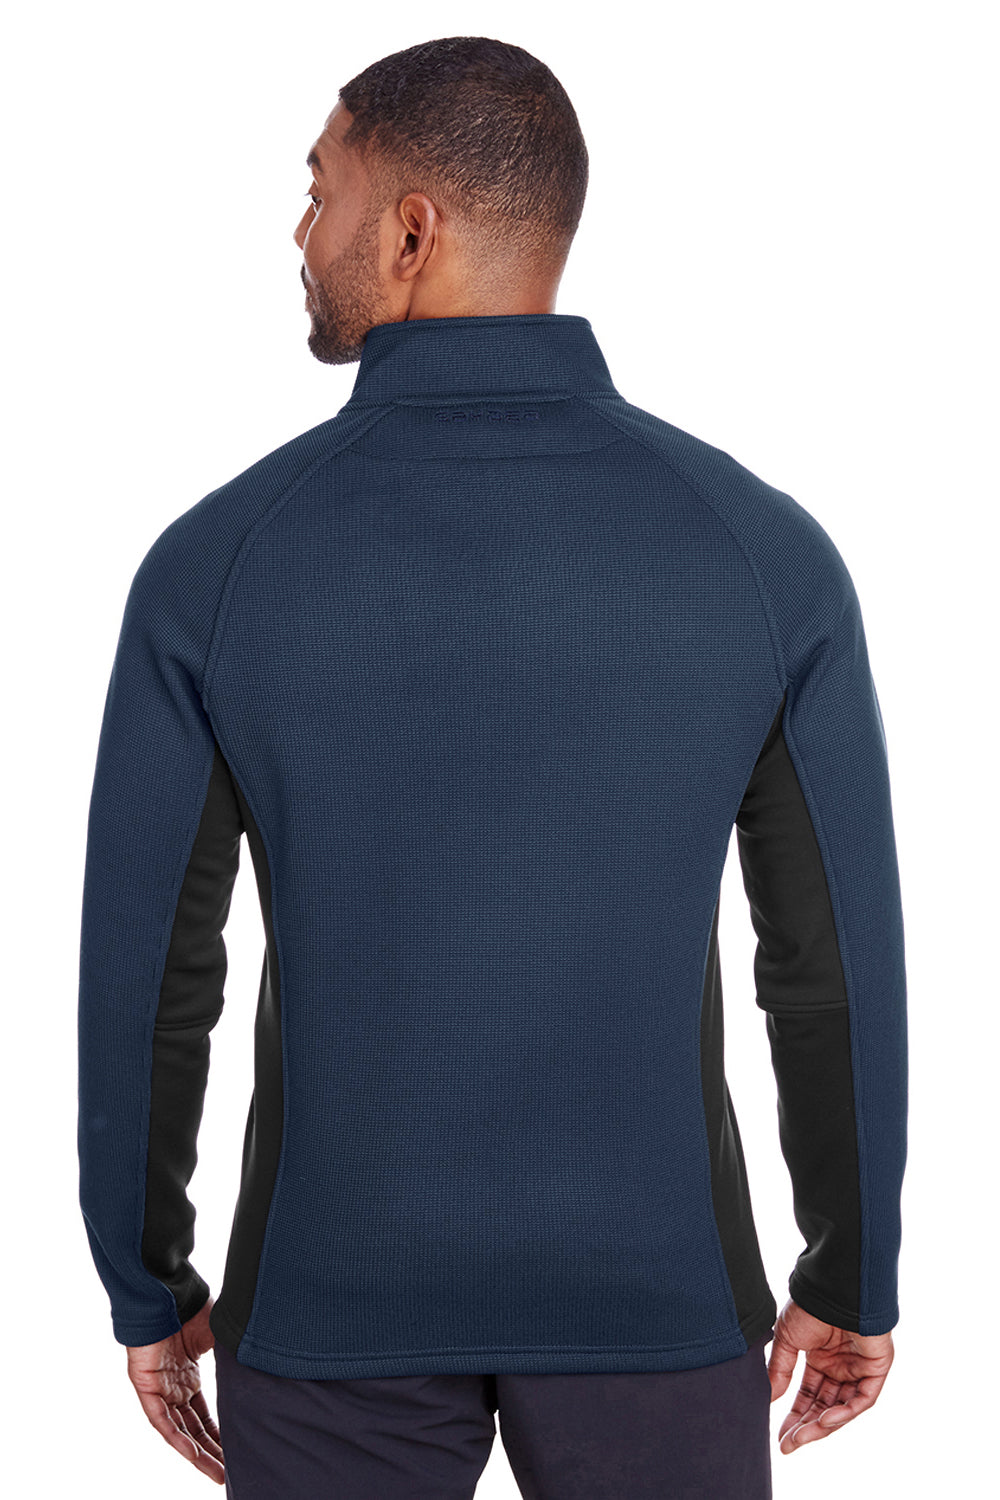 Spyder S16561 Mens Constant 1/4 Zip Sweater Navy Blue Back